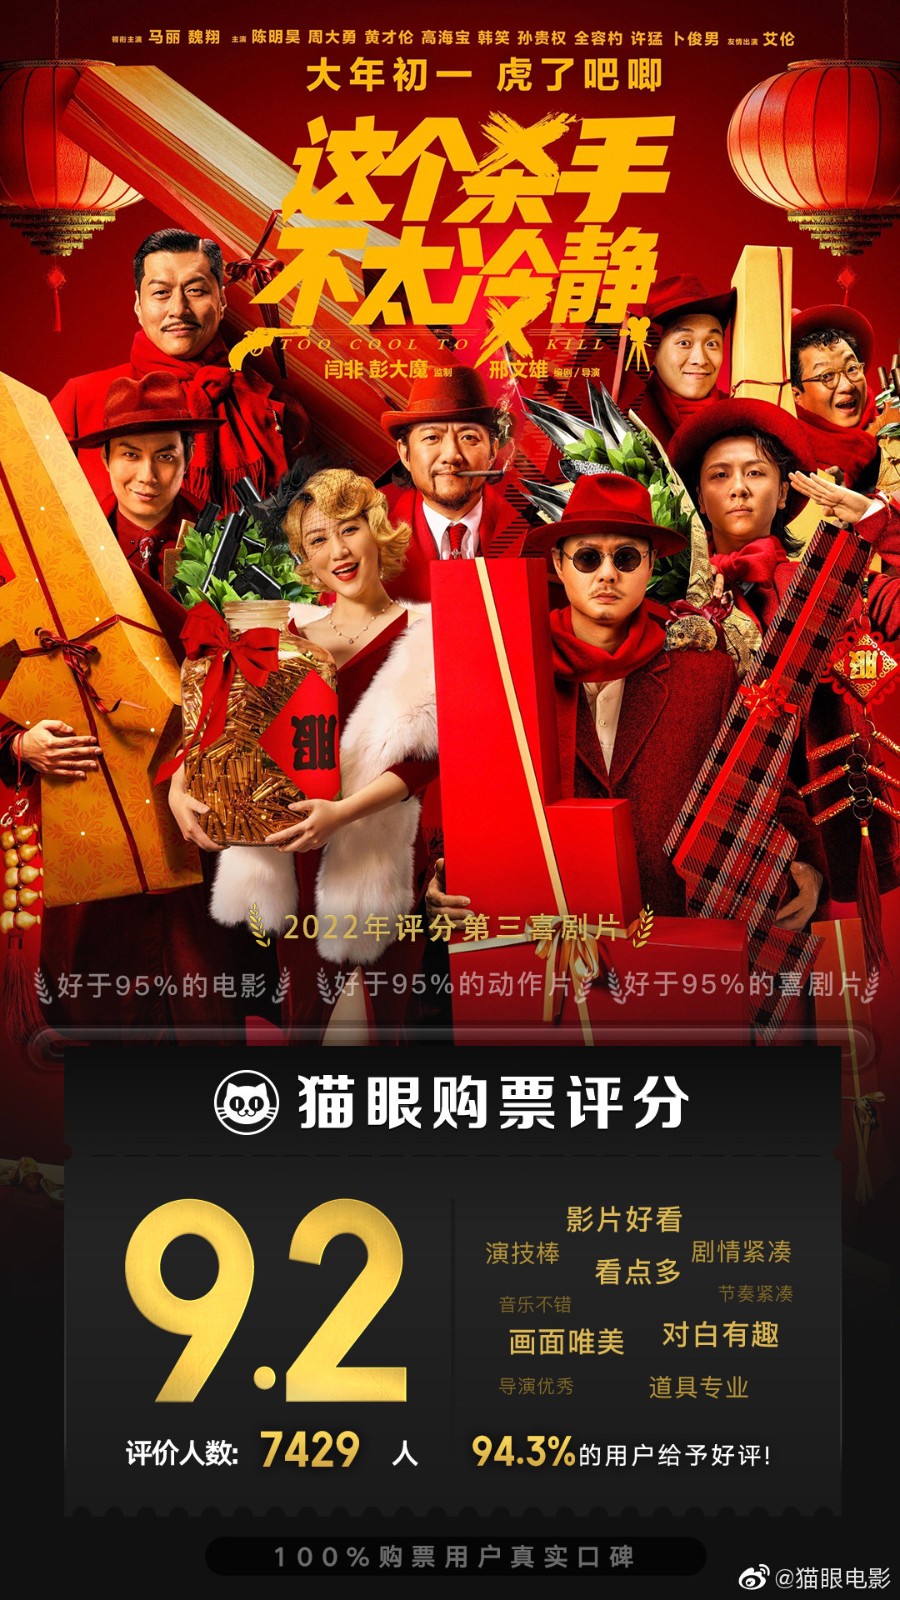 <b>2023年中国电影市场而言，这是一个令人欣喜的开局</b>